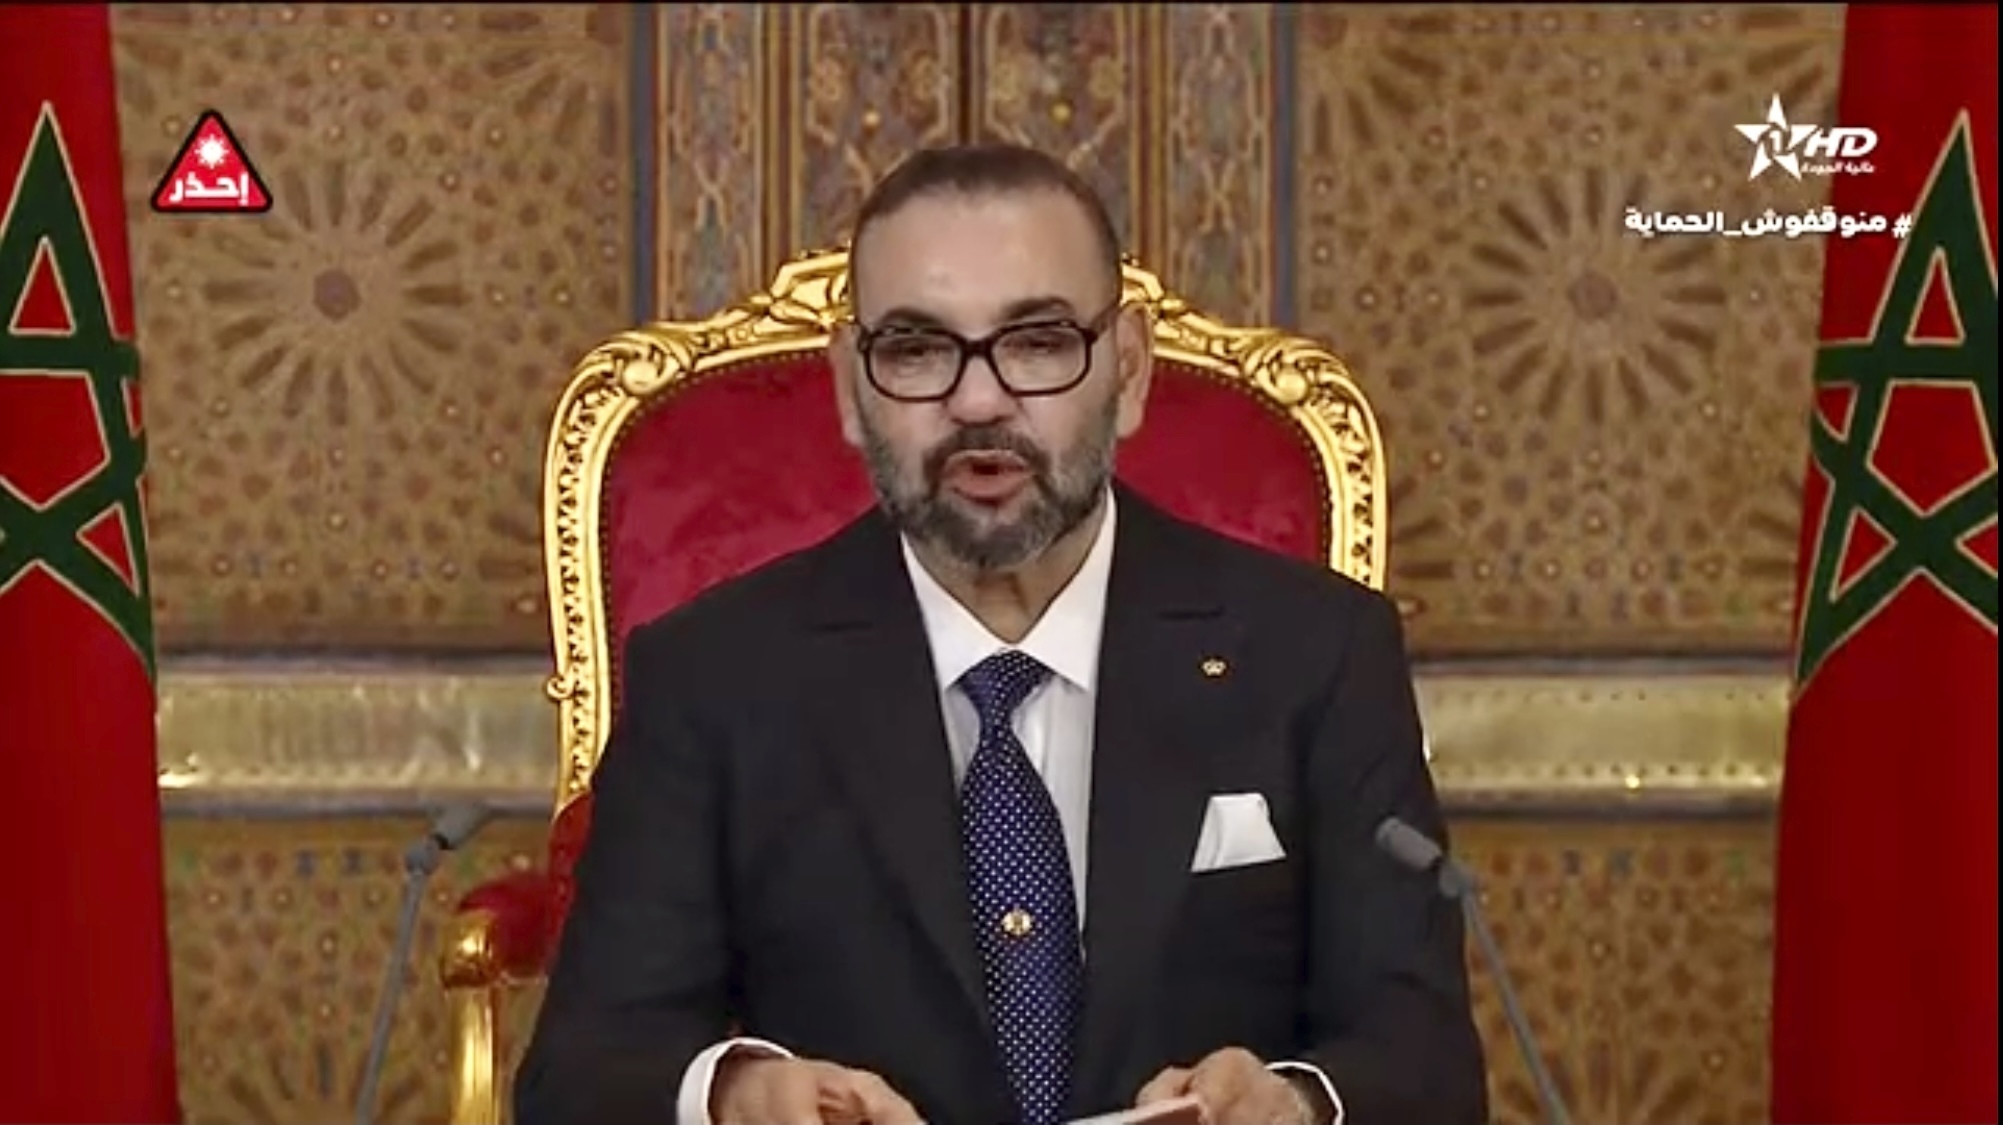 El rey de Marruecos, Mohamed VI, en un discurso a finales de julio.